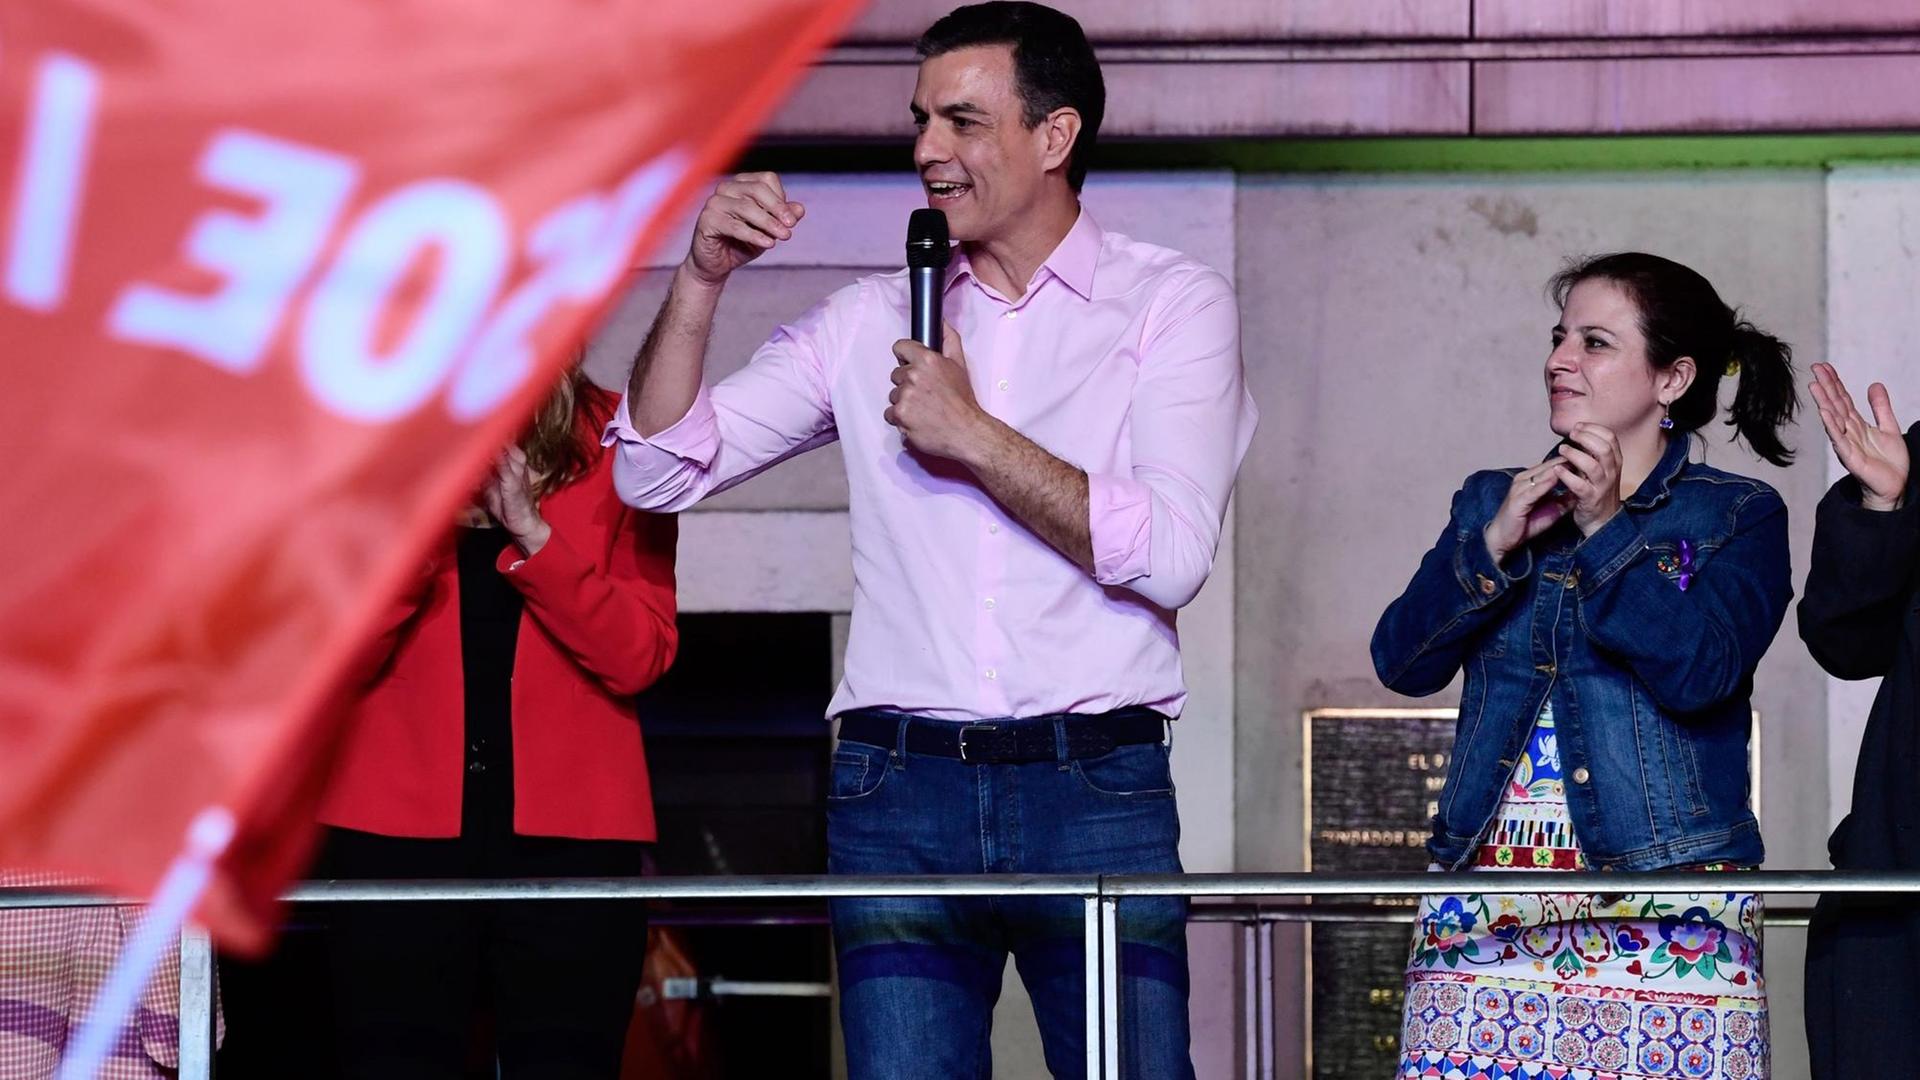 Ministepräsident Sanchez aus Spanien steht auf einer Bühne und feiert seinen Wahlsieg. Links die Fahne seiner sozialistischen Partei.